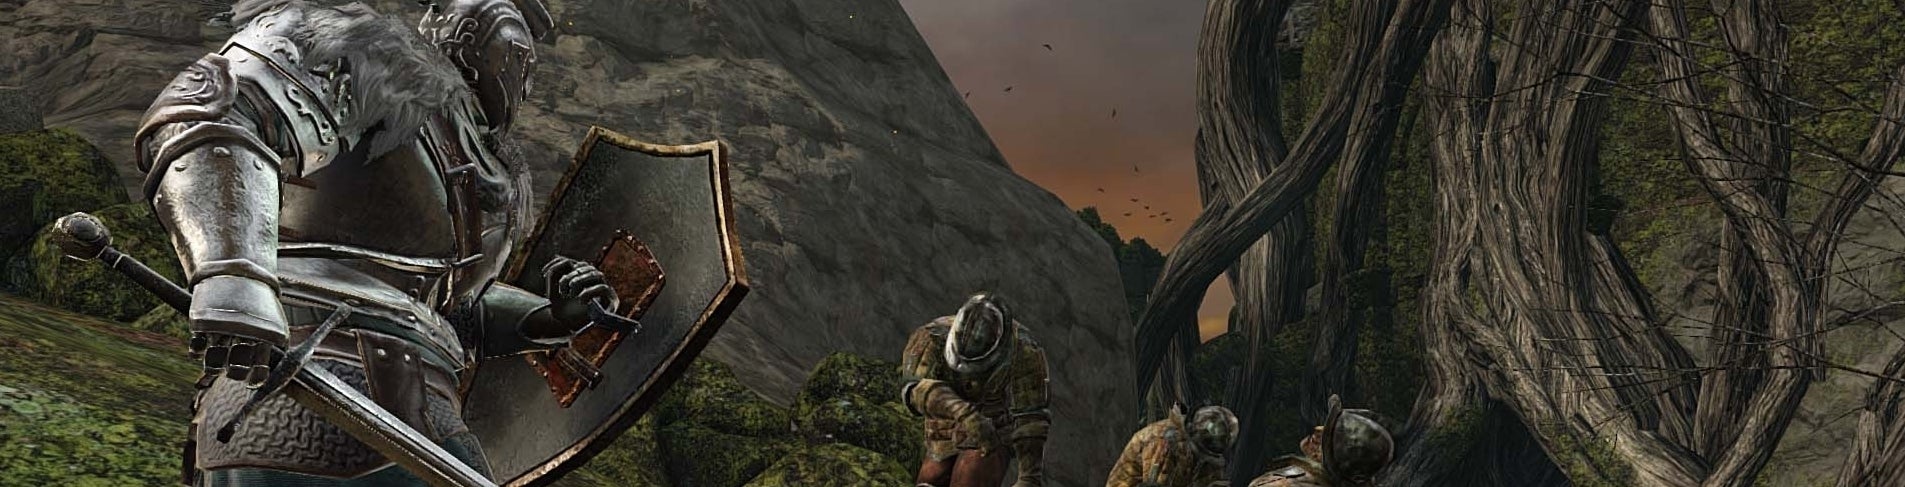 Image for Odstraněny starší obrázky od PC verze Dark Souls 2